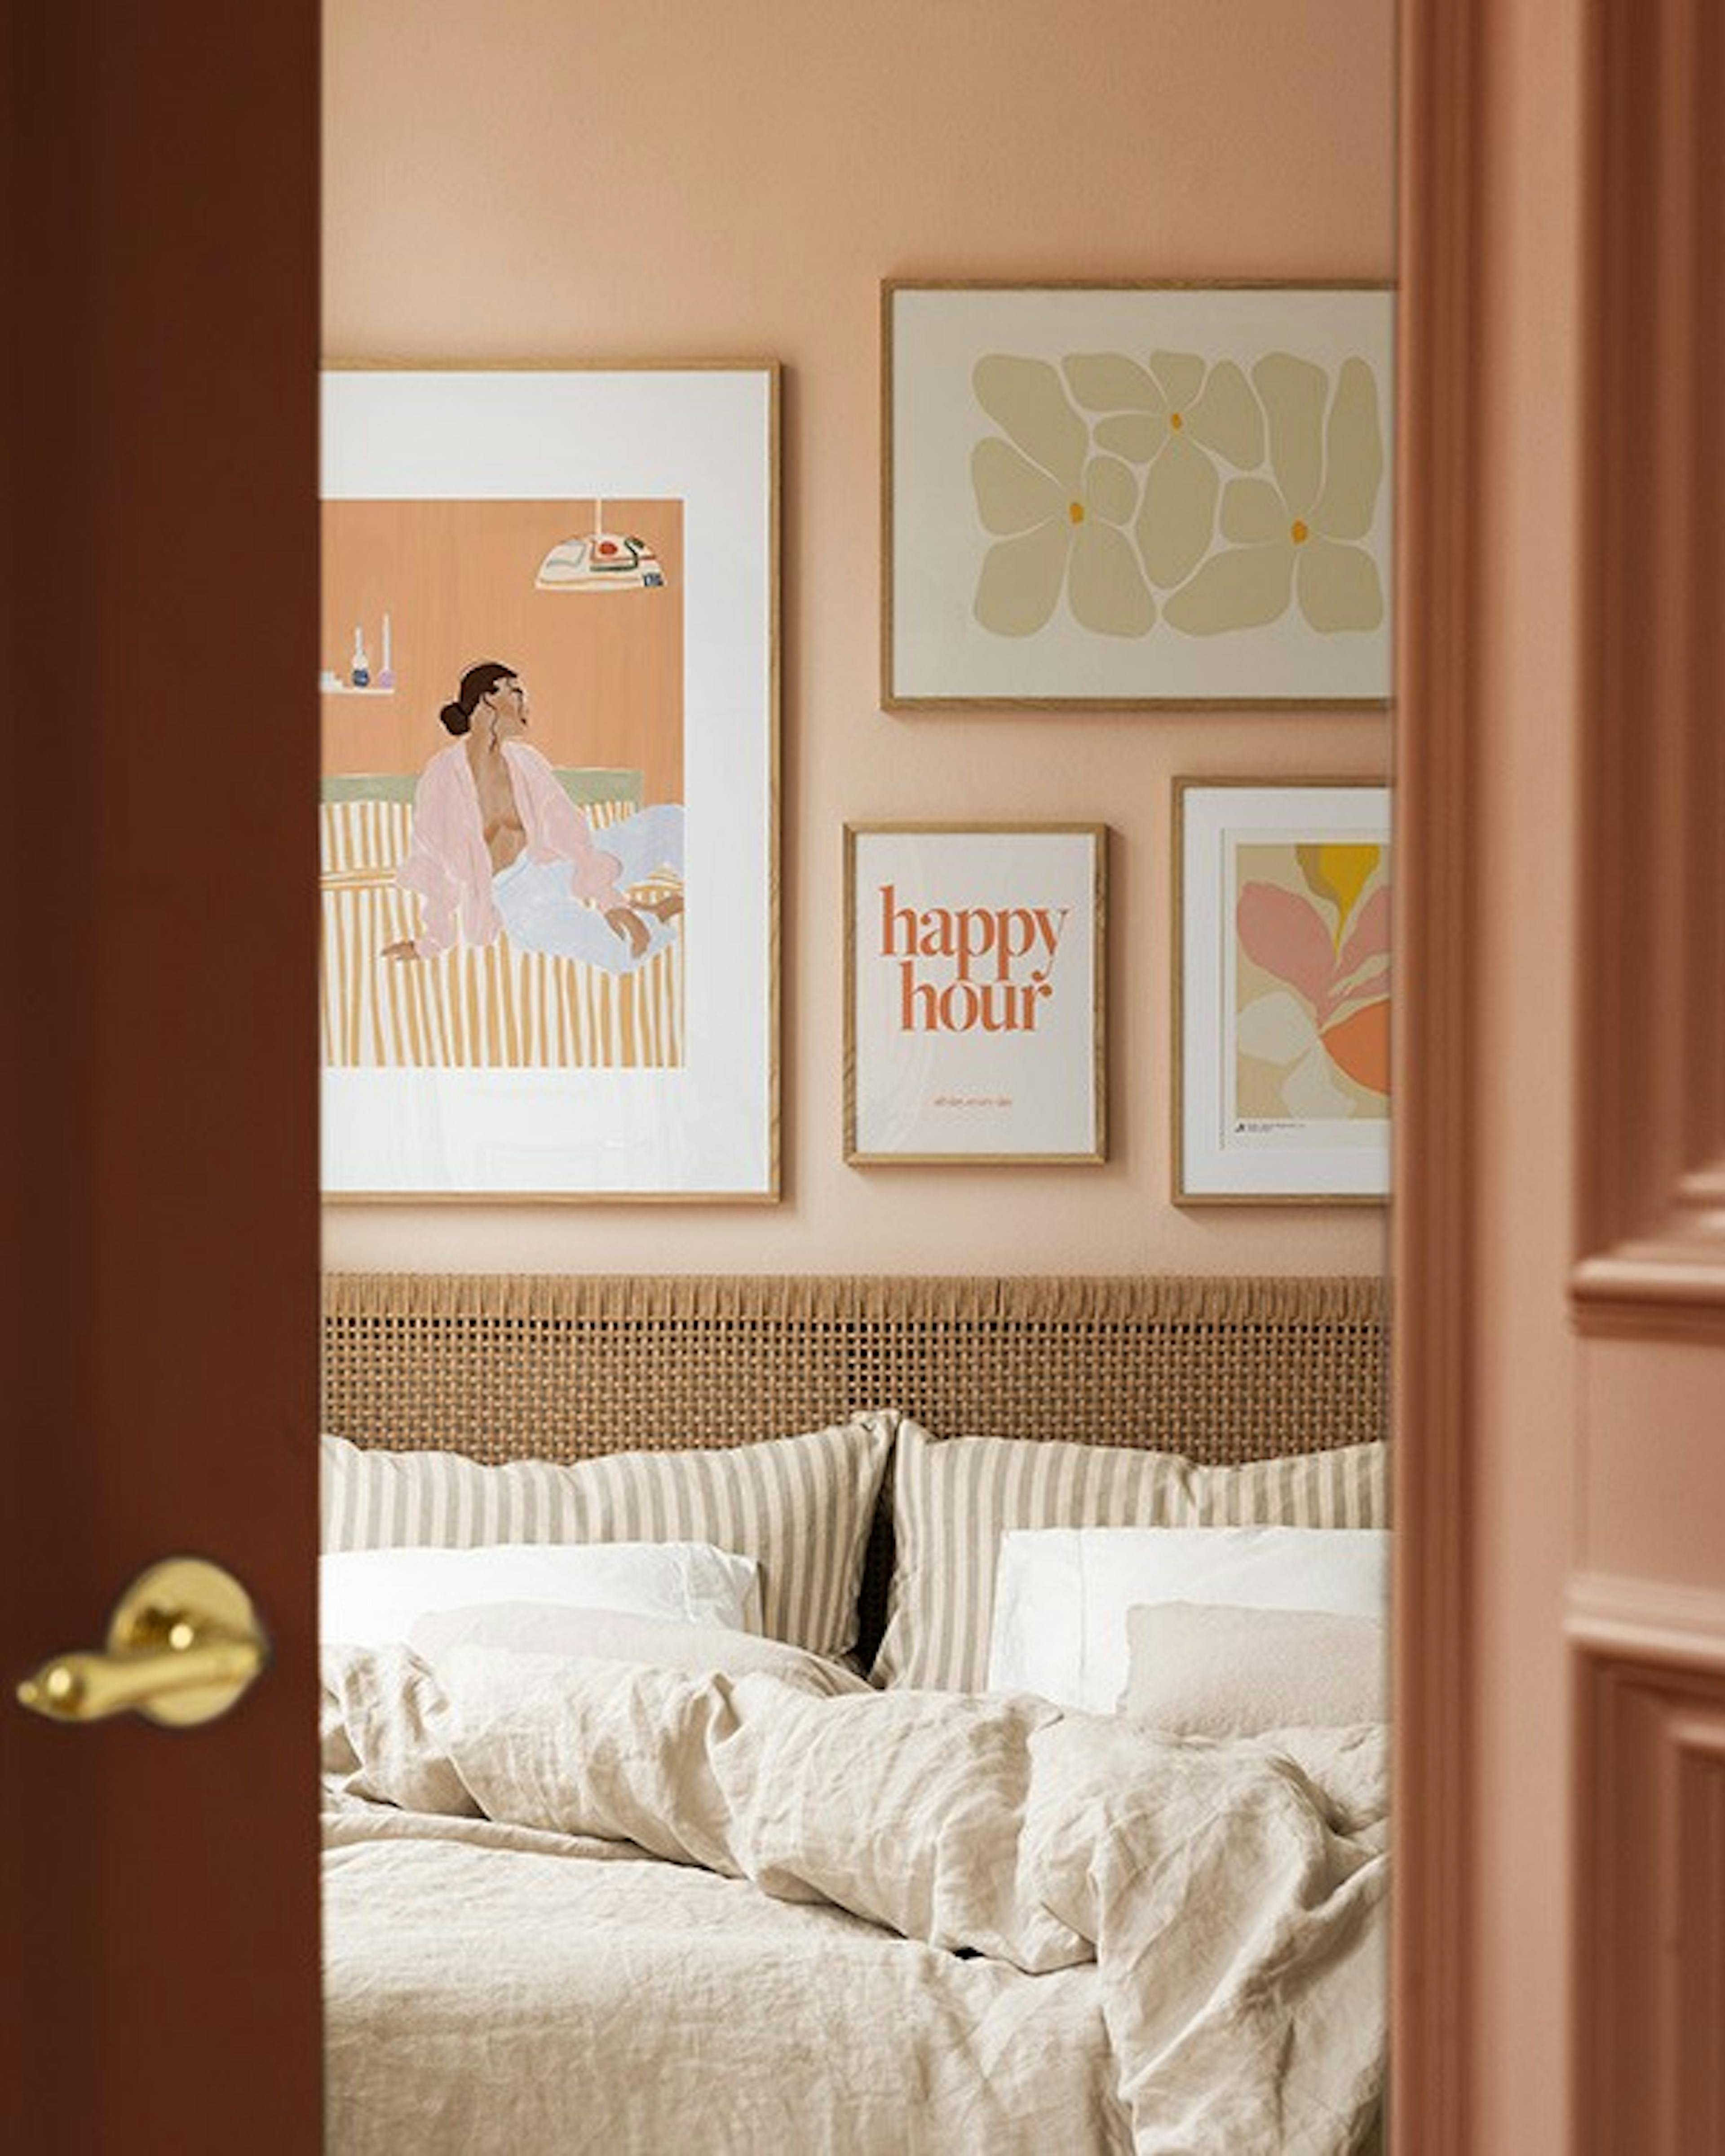 Peachy bedroom billedvæg